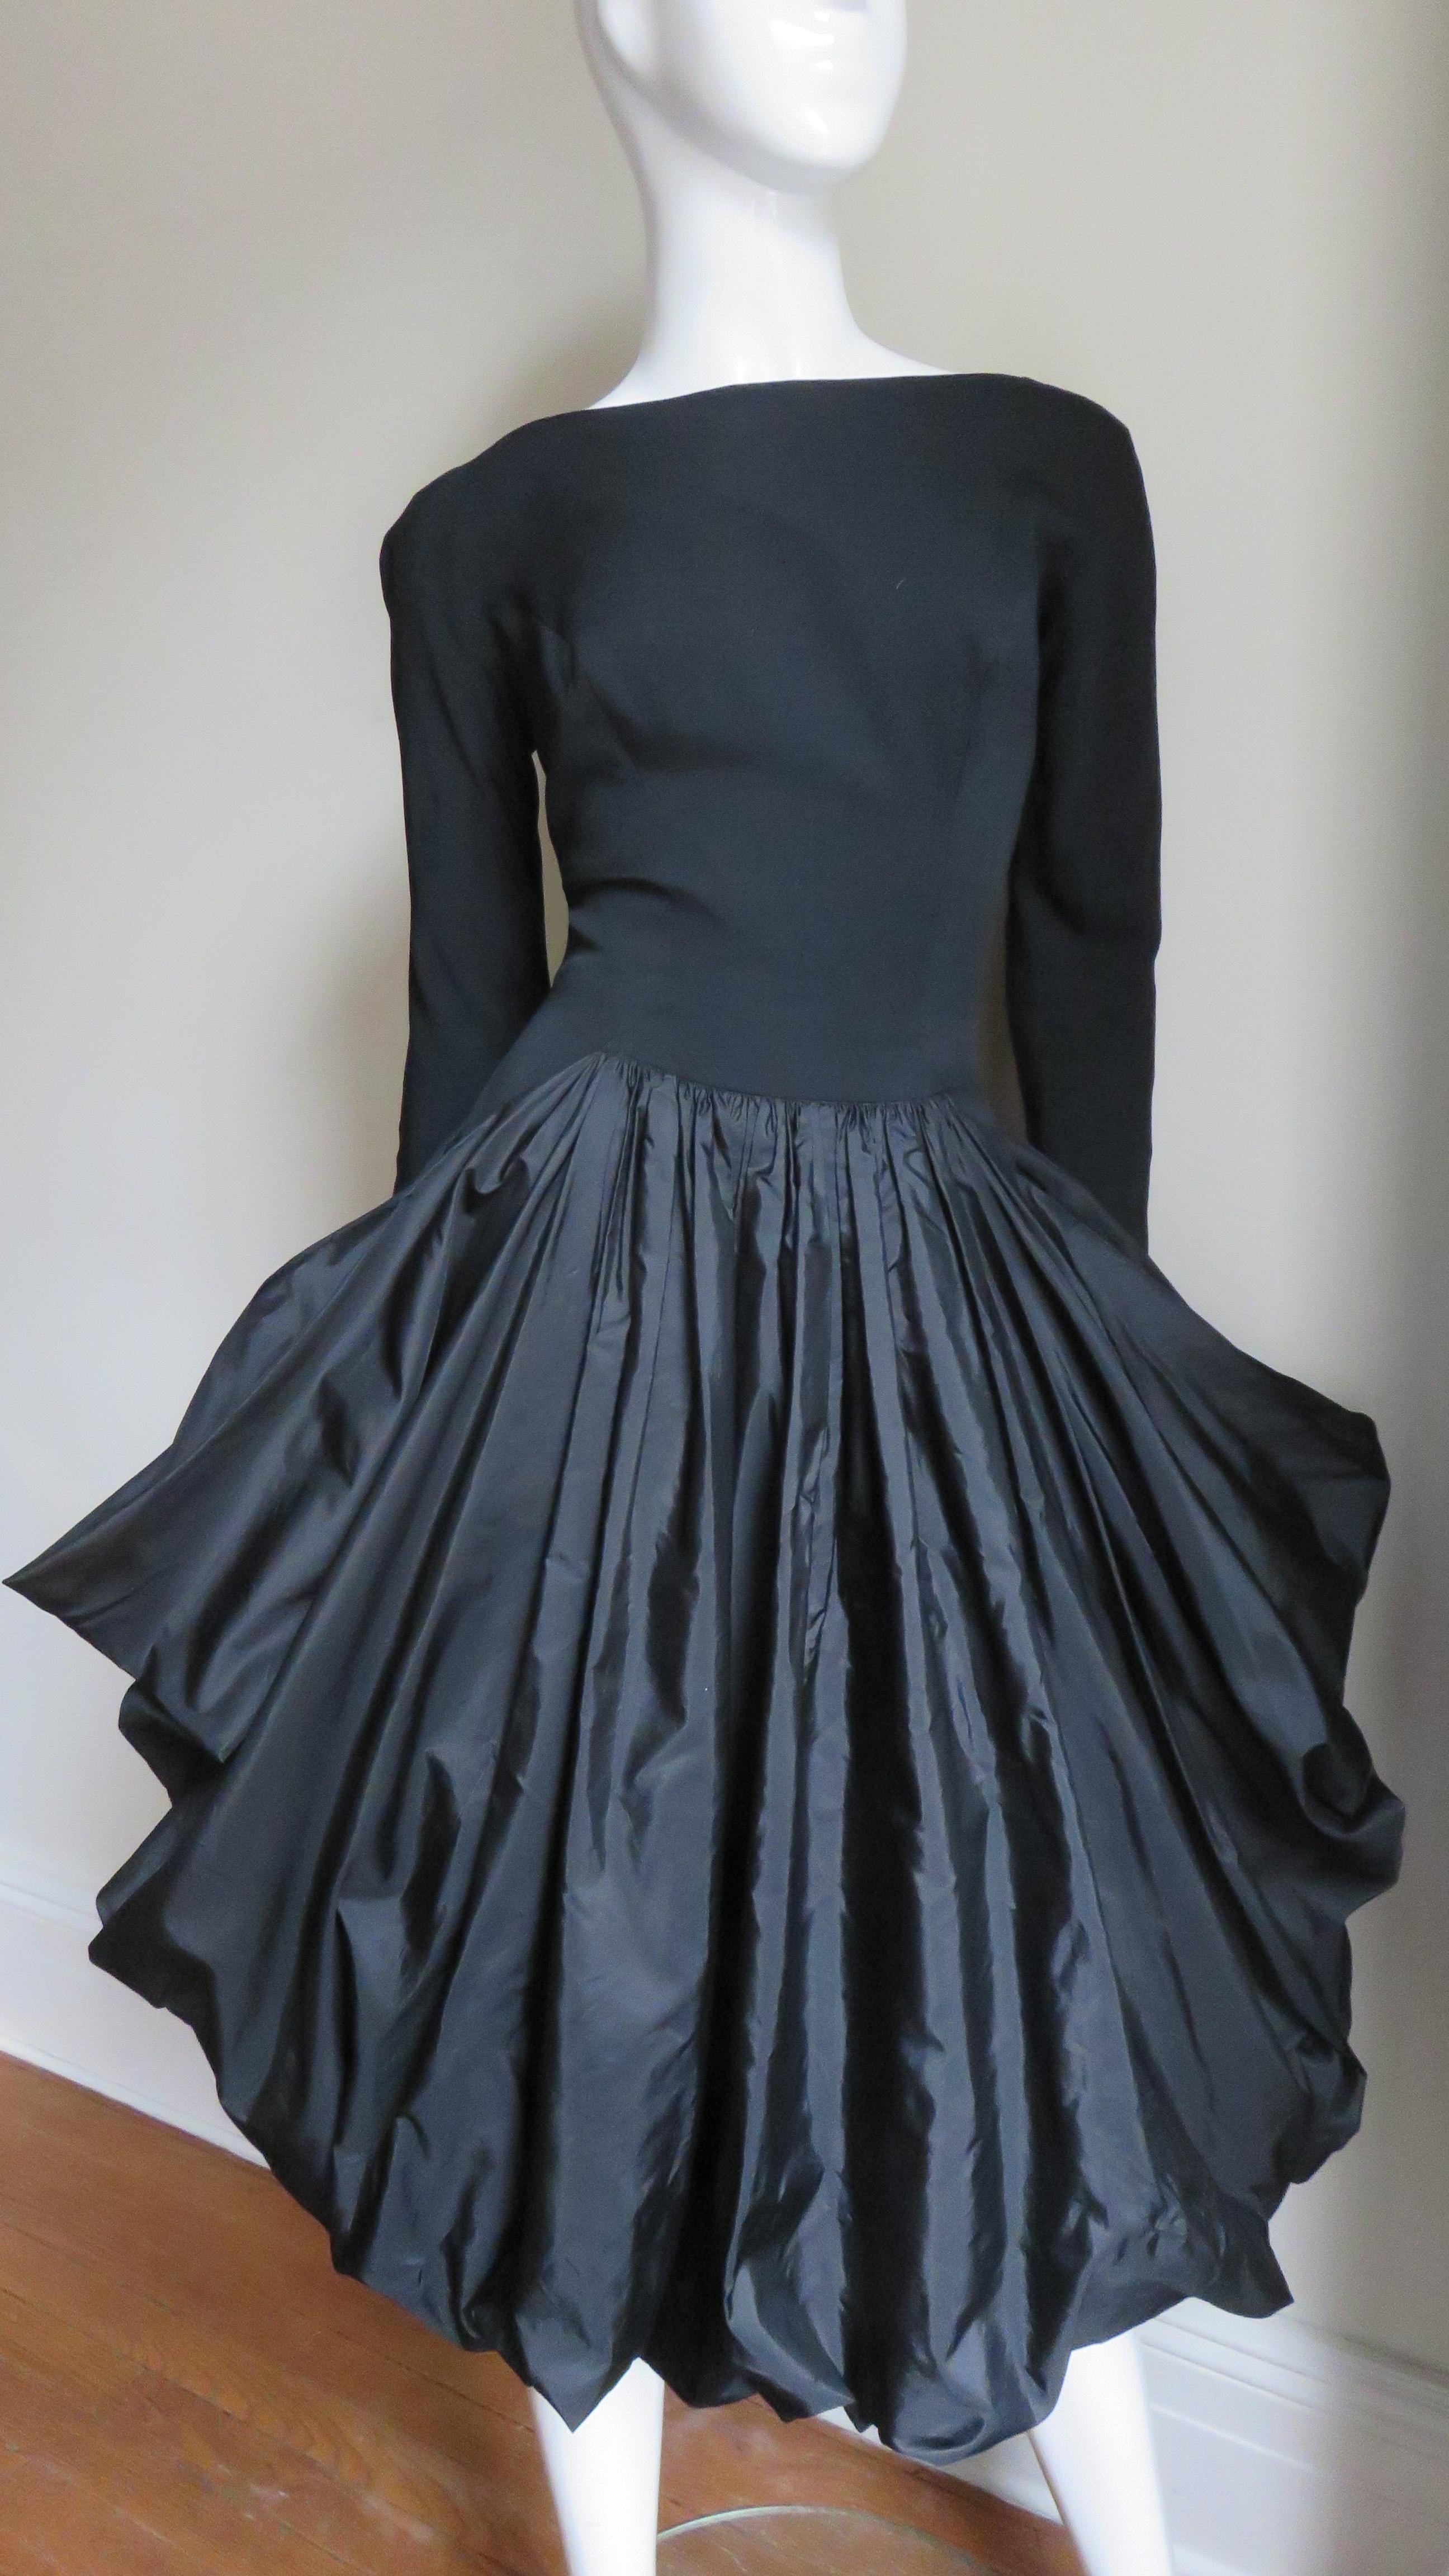 draped skirt dress